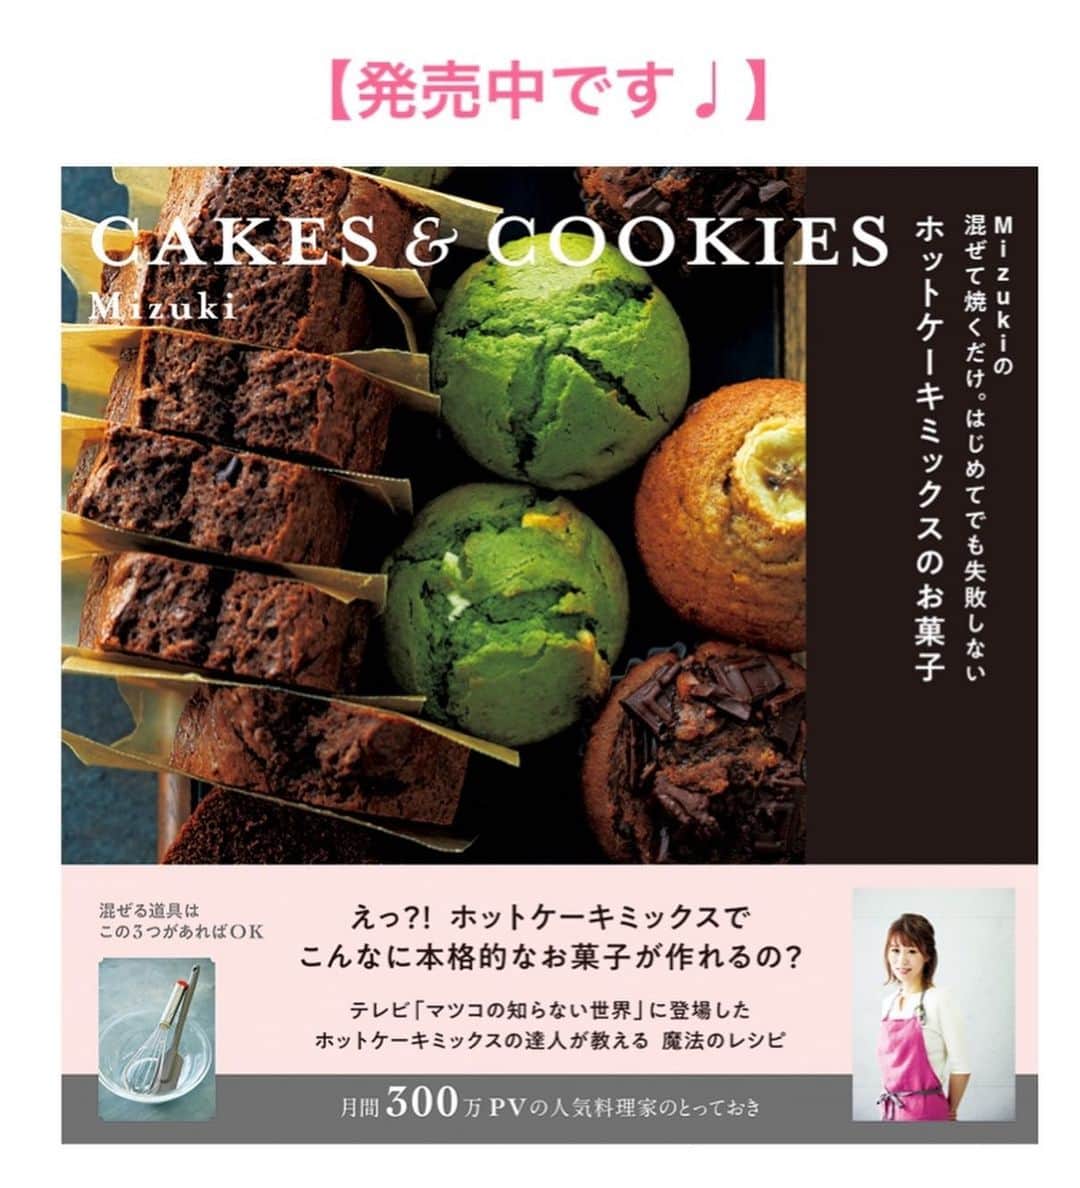 Mizuki【料理ブロガー・簡単レシピ】さんのインスタグラム写真 - (Mizuki【料理ブロガー・簡単レシピ】Instagram)「・﻿ 【レシピ】ーーーーーーーーーー﻿ ♡材料2つ！みかん缶ゼリー♡﻿ ーーーーーーーーーーーーーーー﻿ ﻿ ﻿ おはようございます(*^^*)﻿ ﻿ 今日はたった2つの材料でできる﻿ みかん缶ゼリーのご紹介です♩﻿ 使用するのはみかん缶&ゼラチンのみ！﻿ しかも火を使わずに作れる﻿ 超簡単レシピです(*´艸`)﻿ ﻿ 砂糖なしでさっぱり食べられるので﻿ よかったらお試し下さいね(*^^*)﻿ ﻿ ﻿ ﻿ ーーーーーーーーーーーーーーーーーーーー﻿ 【100ml容器6〜7個分】﻿ みかんの缶詰...1缶(総量425g)﻿ 粉ゼラチン...4g﻿ ﻿ 1.ゼラチンは水大2(分量外)に振り入れてふやかす。﻿ 2.みかん缶の中身を実とシロップに分け、実は等分して容器に入れる。シロップは水(分量外)を足して200mlにしておく。﻿ 3.1を600Wのレンジで20秒加熱し、シロップに加えて混ぜる。容器に注ぎ、冷蔵庫で3時間以上冷やす。﻿ ーーーーーーーーーーーーーーーーーーーー﻿ ﻿ ﻿ ﻿ 《ポイント》﻿ ♦︎甘さを足したい場合は、レンチンしたゼラチンに砂糖(大1くらい)を加えて混ぜ、それからシロップに加えて下さい♩﻿ ﻿ ﻿ ﻿ ﻿ ﻿ ﻿ ﻿ 🔻入荷しました🔻﻿ ＿＿＿＿＿＿＿＿＿＿＿＿＿＿＿＿＿＿＿﻿ 📕\ \ 新刊発売中 / /📕﻿ 簡単・時短！ 毎日のごはんがラクになる﻿ ✨🦋 【 #Mizukiの今どき和食 】🦋✨﻿ ＿＿＿＿＿＿＿＿＿＿＿＿＿＿＿＿＿＿＿﻿ ﻿ なるべく少ない材料で﻿ 手間も時間も省きながら﻿ 簡単にできるおいしい和食レシピ♩﻿ 簡単に失敗なくマスターできる一冊で﻿ もっと気軽に、カジュアルに﻿ 和食を楽しんで下さいね(*^^*)﻿ ﻿ ﻿ ーーー ⭐️PART.1 メインおかず ⭐️ーーー﻿ 素材別にレシピをご紹介しています♩﻿ 和食の定番から新定番まで﻿ どれも押さえておきたいメニューばかり。﻿ 肉じゃがはフライパンで！焼き豚はレンジで！﻿ ぶり大根は切り身を使って手軽に作ります♩﻿ ﻿ ーーー ☘️PART.2 サブおかず ☘️ーーー﻿ 年中手に入るお手頃野菜と﻿ 乾物や大豆、こんにゃくなどを使った﻿ 副菜レシピをたっぷり掲載！！﻿ 普段SNSではメインおかずばかりなので﻿ 本では副菜にも力を入れています(*^^*)﻿ ﻿ ーーー 🌸PART.3 ごはんと汁物 🌸ーーー﻿ ささっと作れる丼と麺、﻿ みんなで食べたいいなり寿司や﻿ 手巻きごはんもご紹介！﻿ 複数の炊き込みごはんと﻿ 味噌汁&和風スープも盛りだくさん！﻿ ﻿ ﻿ 各レシピのポイントは﻿ 【写真付きで丁寧に解説】﻿ 副菜レシピもたっぷりなので﻿ 【メインページに副菜メモもつけました】﻿ ＊このメインにはこの副菜が合いますよ〜﻿ という献立の提案です(*^^*)﻿ 【その他コラムも充実】﻿ 全127品中ほぼ全て﻿ 【本だけのレシピです！】﻿ ﻿ ＿＿＿＿＿＿＿＿＿＿＿＿＿＿＿＿＿＿＿﻿ ﻿ ⭐️ストーリー、ハイライト、プロフ画面に﻿ 本のURLを貼らせていただいております♩﻿ →(@mizuki_31cafe )﻿ ﻿ ﻿ ﻿ ﻿ ﻿ ＿＿＿＿＿＿＿＿＿＿＿＿＿＿＿＿＿﻿ ＿＿＿＿＿＿＿＿＿＿＿＿＿＿＿＿＿﻿ 🎀発売中🎀﻿ 【#ホットケーキミックスのお菓子 】﻿ ﻿ 一冊まるっとホケミスイーツ♩﻿ 普段のおやつから﻿ 特別な日にも使えるレシピを﻿ この一冊に詰め込みました(*^^*)﻿ ホットケーキミックスを使えば﻿ 簡単に本格的なお菓子が作れますよ♡﻿ ﻿ 🔹ハイライト、ストーリーに﻿ リンクを貼っています🔹﻿ ＿＿＿＿＿＿＿＿＿＿＿＿＿＿＿＿＿﻿ ＿＿＿＿＿＿＿＿＿＿＿＿＿＿＿＿＿﻿ ﻿ ﻿ ﻿ ﻿ ﻿ #みかん缶#ゼリー#ゼラチン#材料2つ#おやつ#スイーツ#うちで過ごそう#おうち時間#Mizuki#簡単レシピ#時短レシピ#節約レシピ#料理#レシピ#フーディーテーブル#おうちごはん#おうちカフェ#デリスタグラマー#料理好きな人と繋がりたい#おうちごはんlover#foodpic#follow#cooking#recipe#lin_stagrammer#stayhome#みかん缶ゼリー」5月7日 7時15分 - mizuki_31cafe